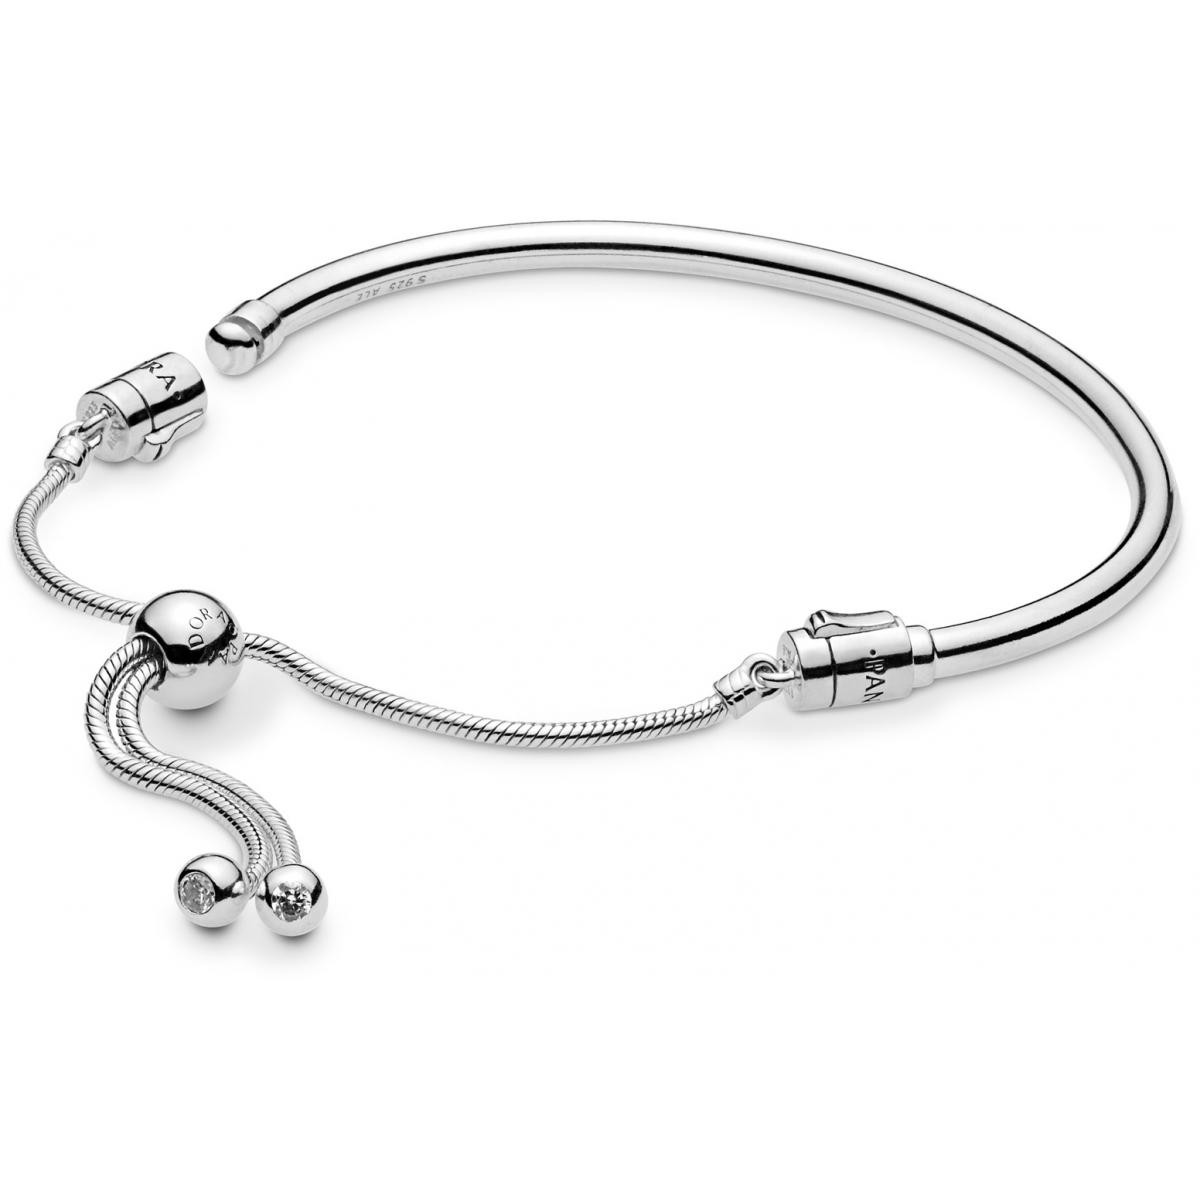 Bracelet Pandora Moments de vie 597953CZ - Bracelet Jonc Coulissant Moments  en Argent Femme